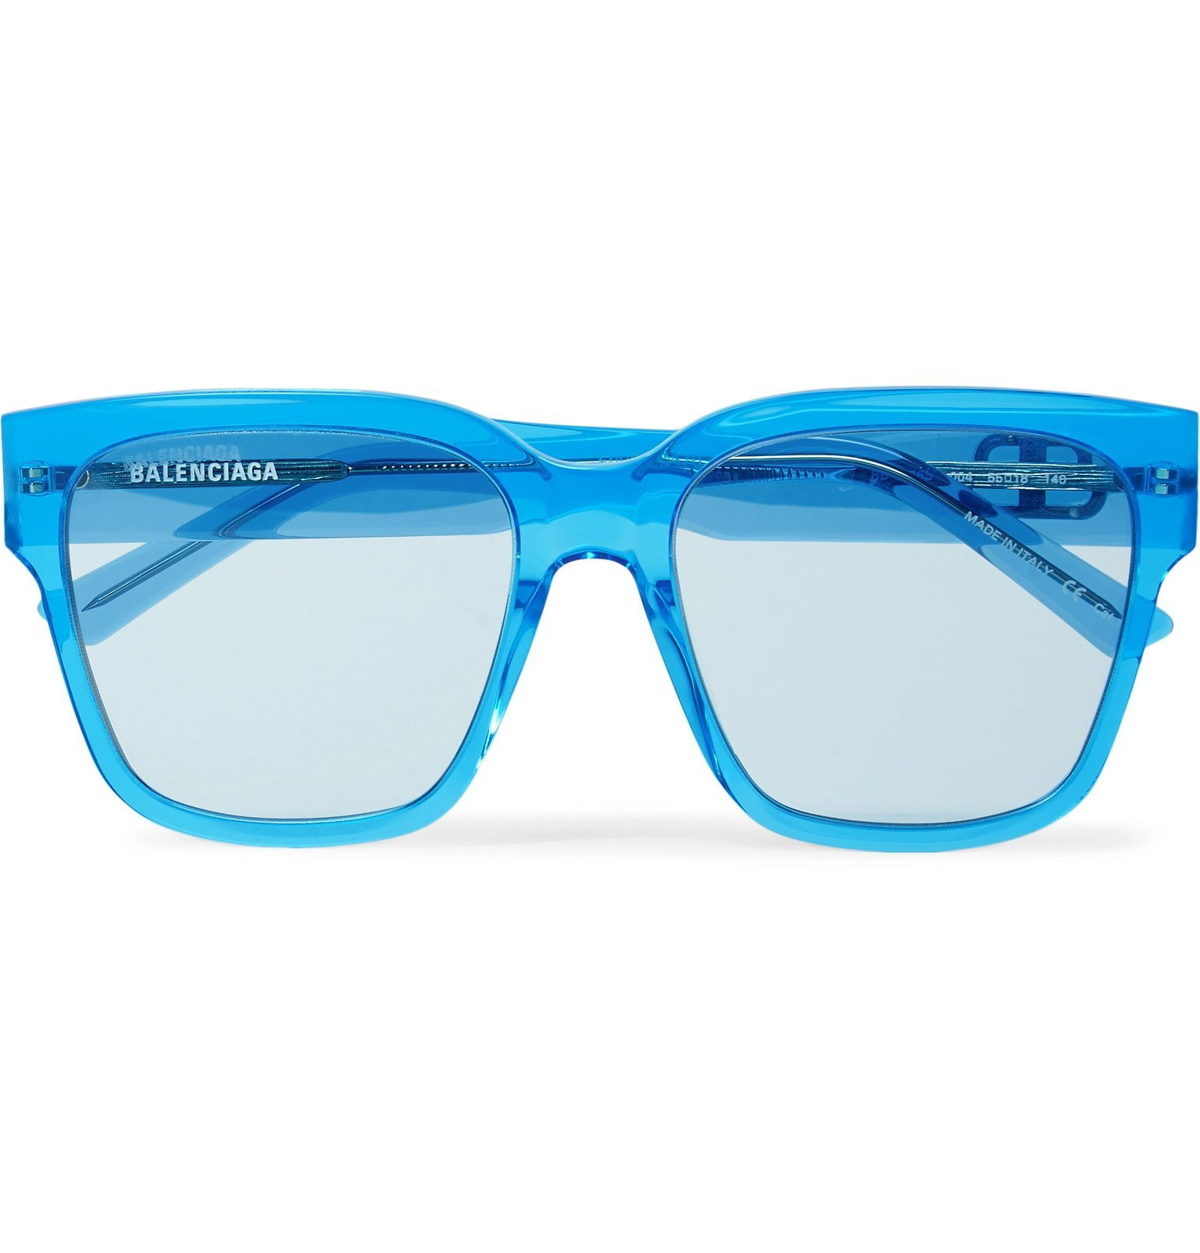 Bonde brugervejledning alias Balenciaga - Square-Frame Acetate Sunglasses - Blue Balenciaga